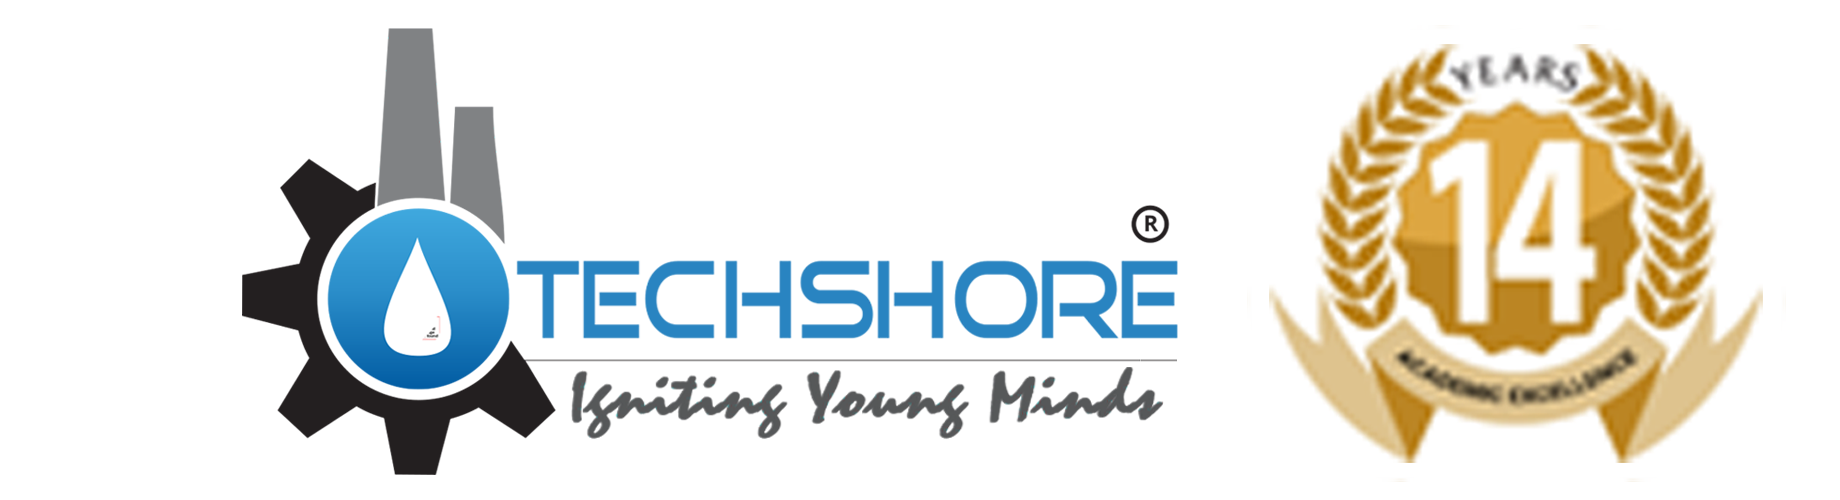 Techshore's logo